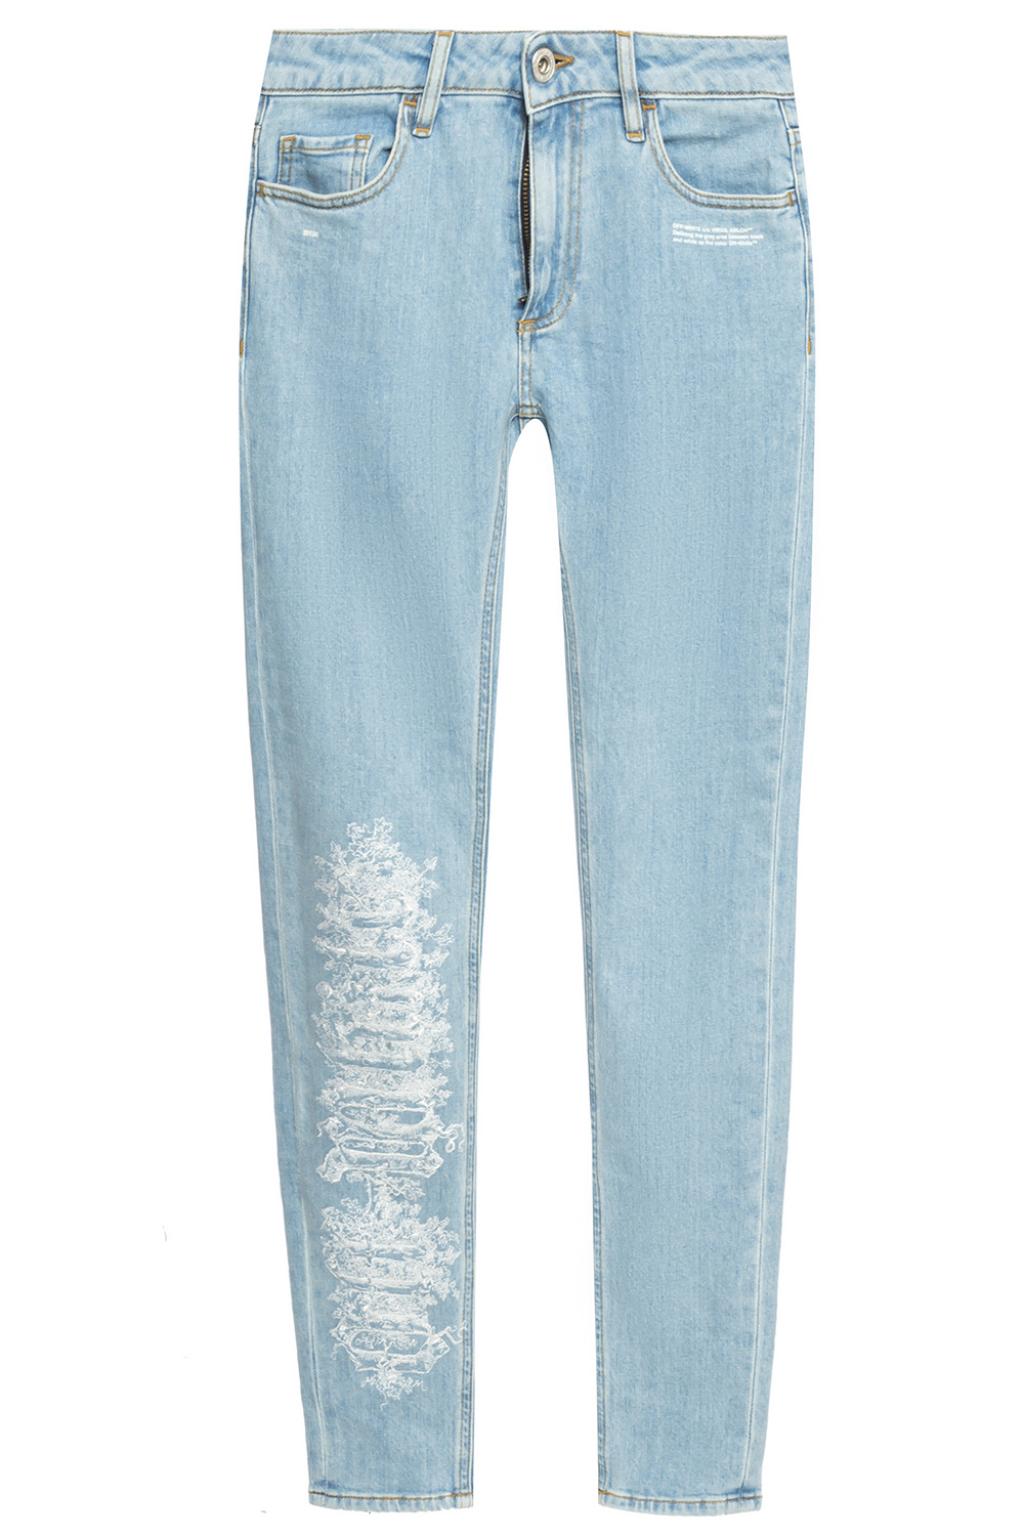 white jeans australia